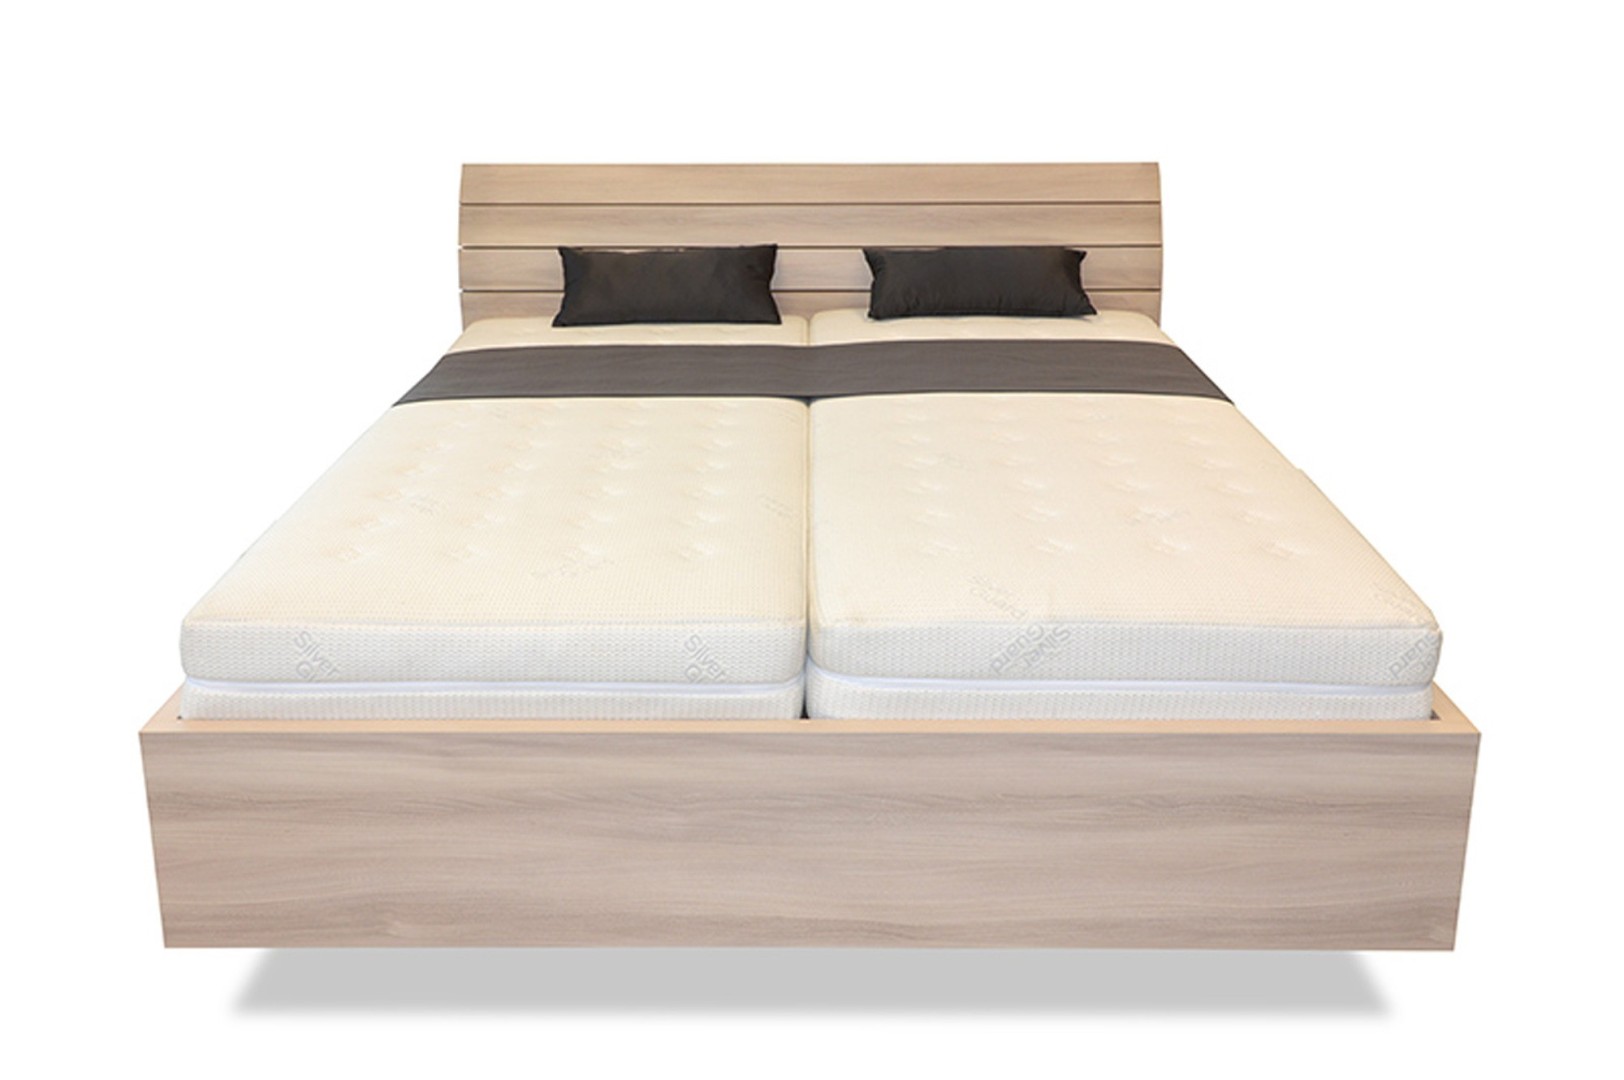 Ahorn SALINA Basic - vznášející se dvoulůžková postel 160 x 200 cm, lamino